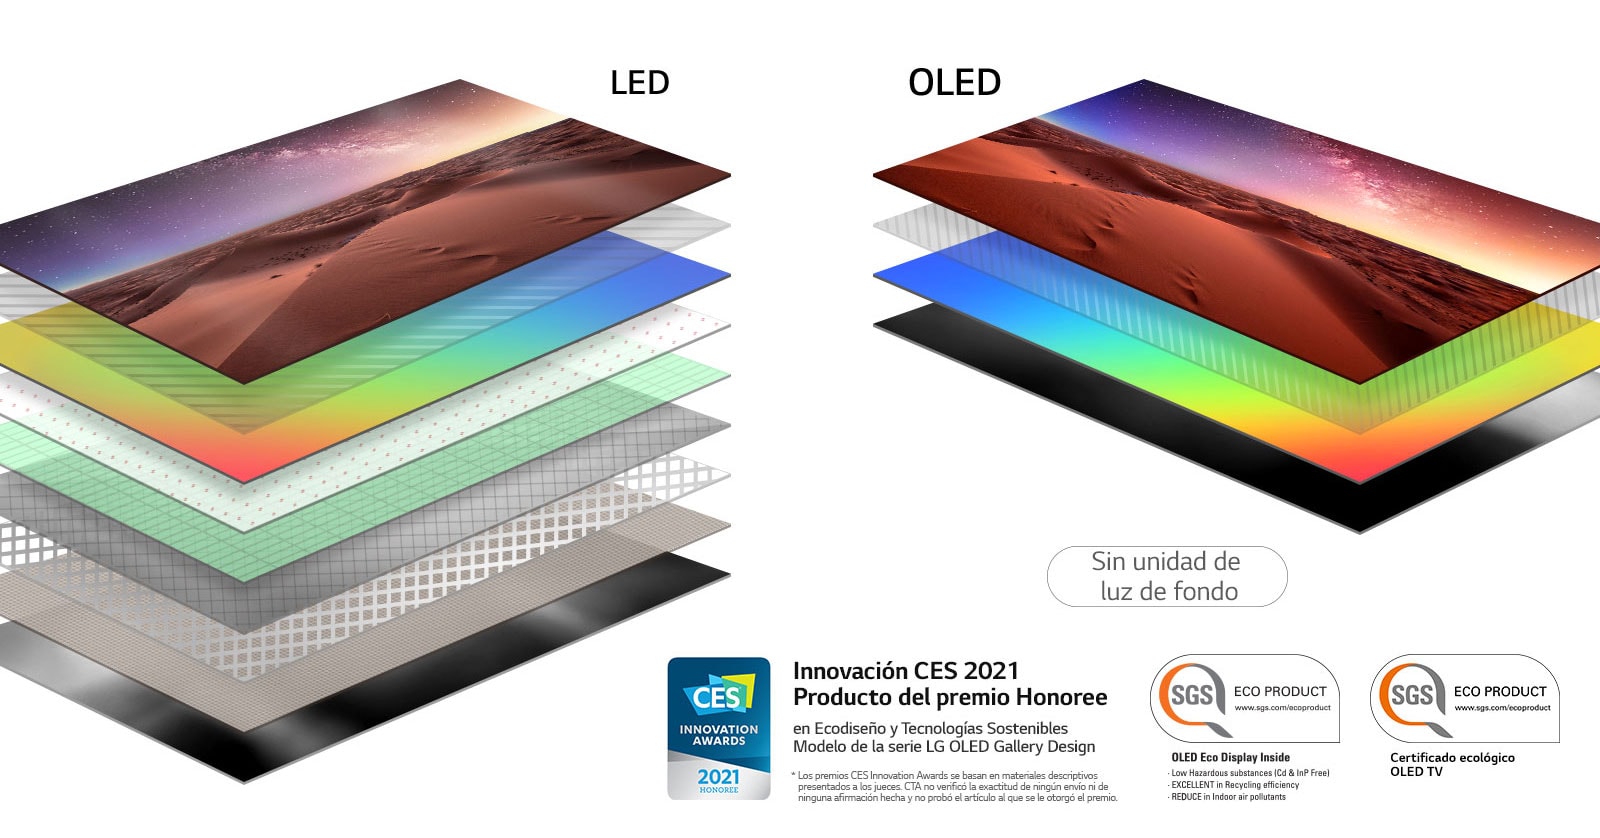 Comparación entre la composición de la capa de la pantalla del televisor LED retroiluminado y el televisor OLED autoiluminado (reproducir el vídeo)